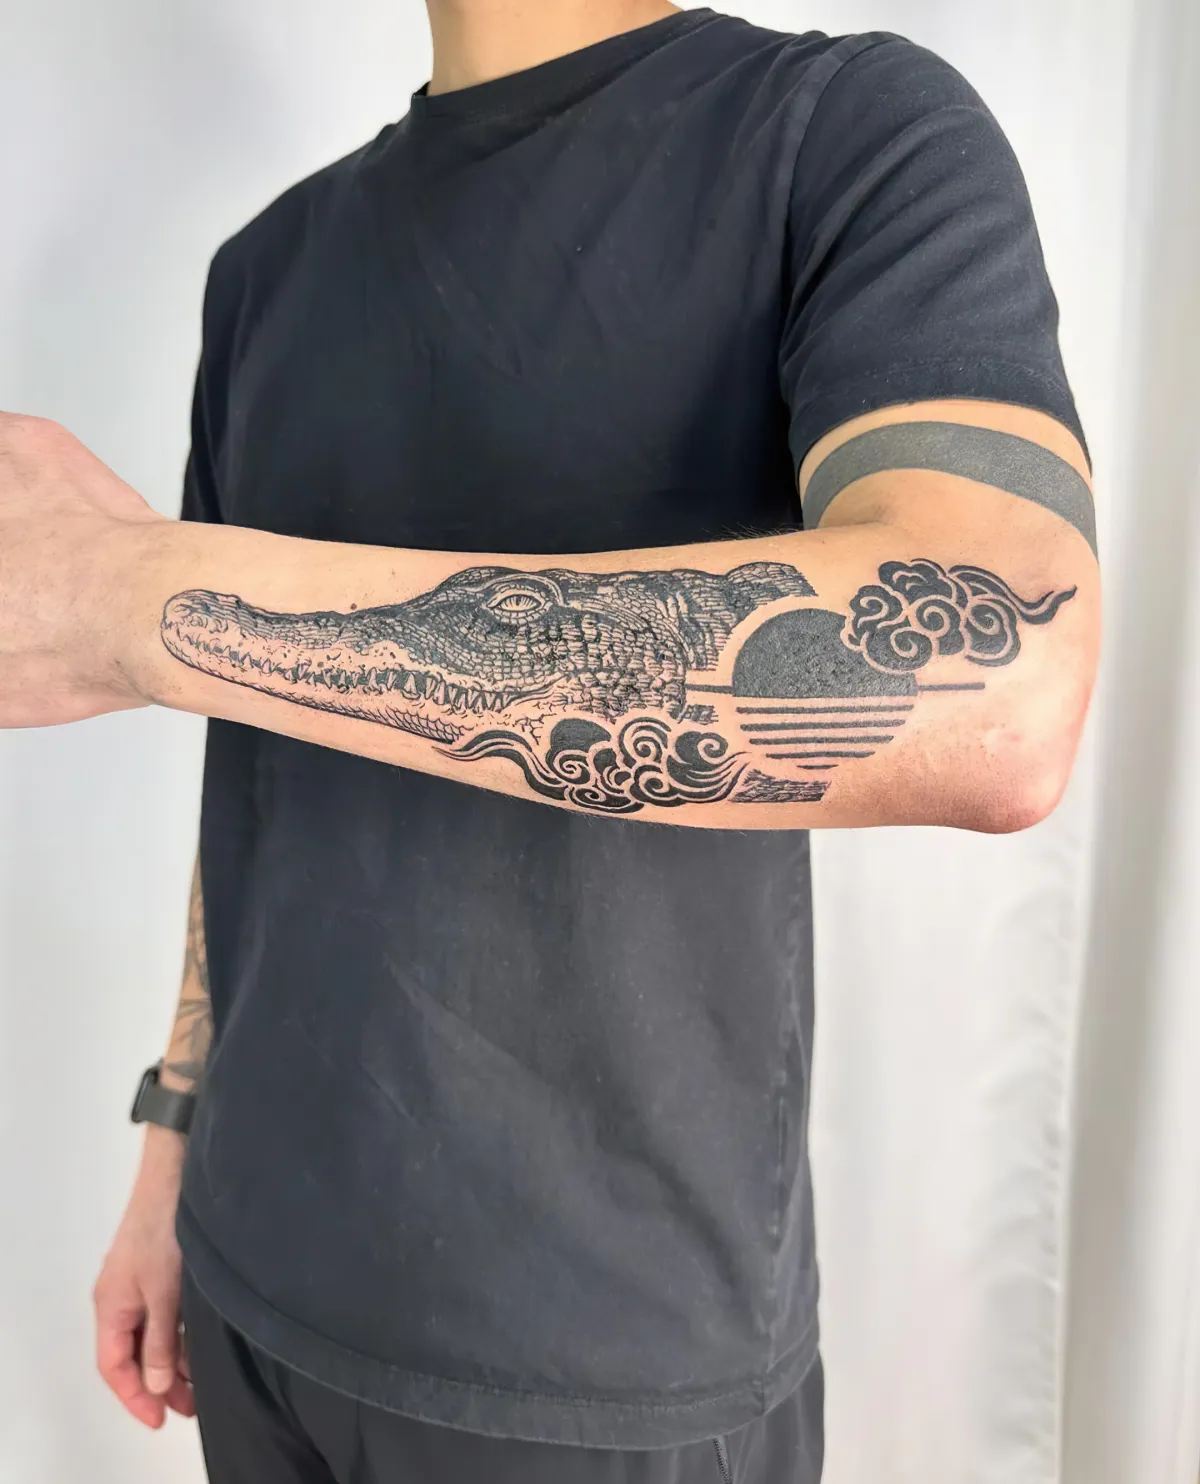 krokodil tattoo am unterarm tier motive tattoos